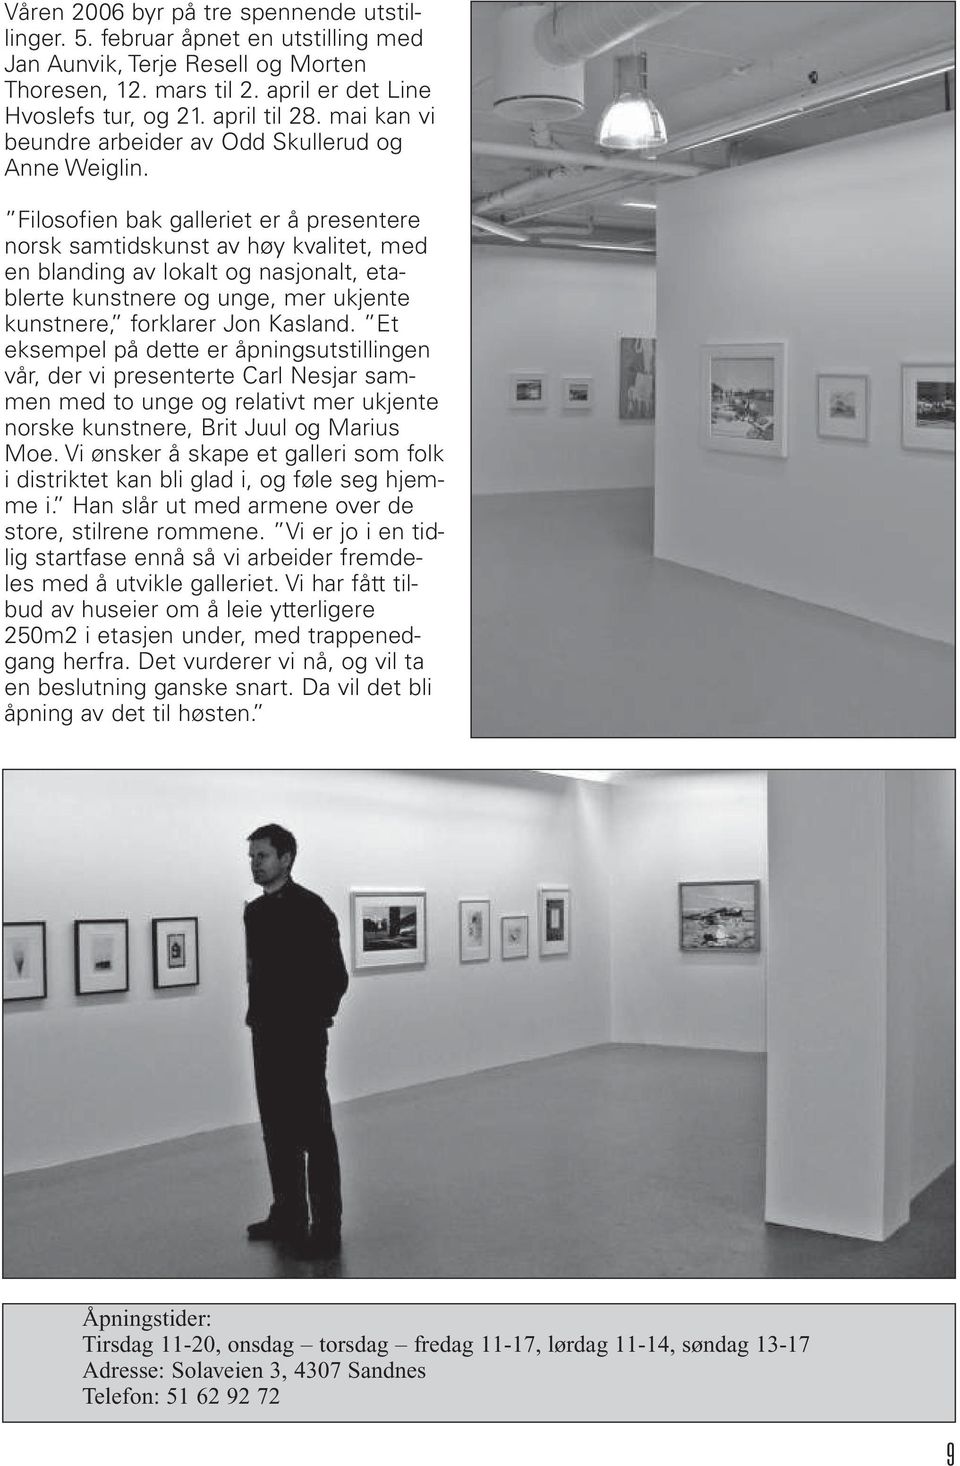 Filosofien bak galleriet er å presentere norsk samtidskunst av høy kvalitet, med en blanding av lokalt og nasjonalt, etablerte kunstnere og unge, mer ukjente kunstnere, forklarer Jon Kasland.